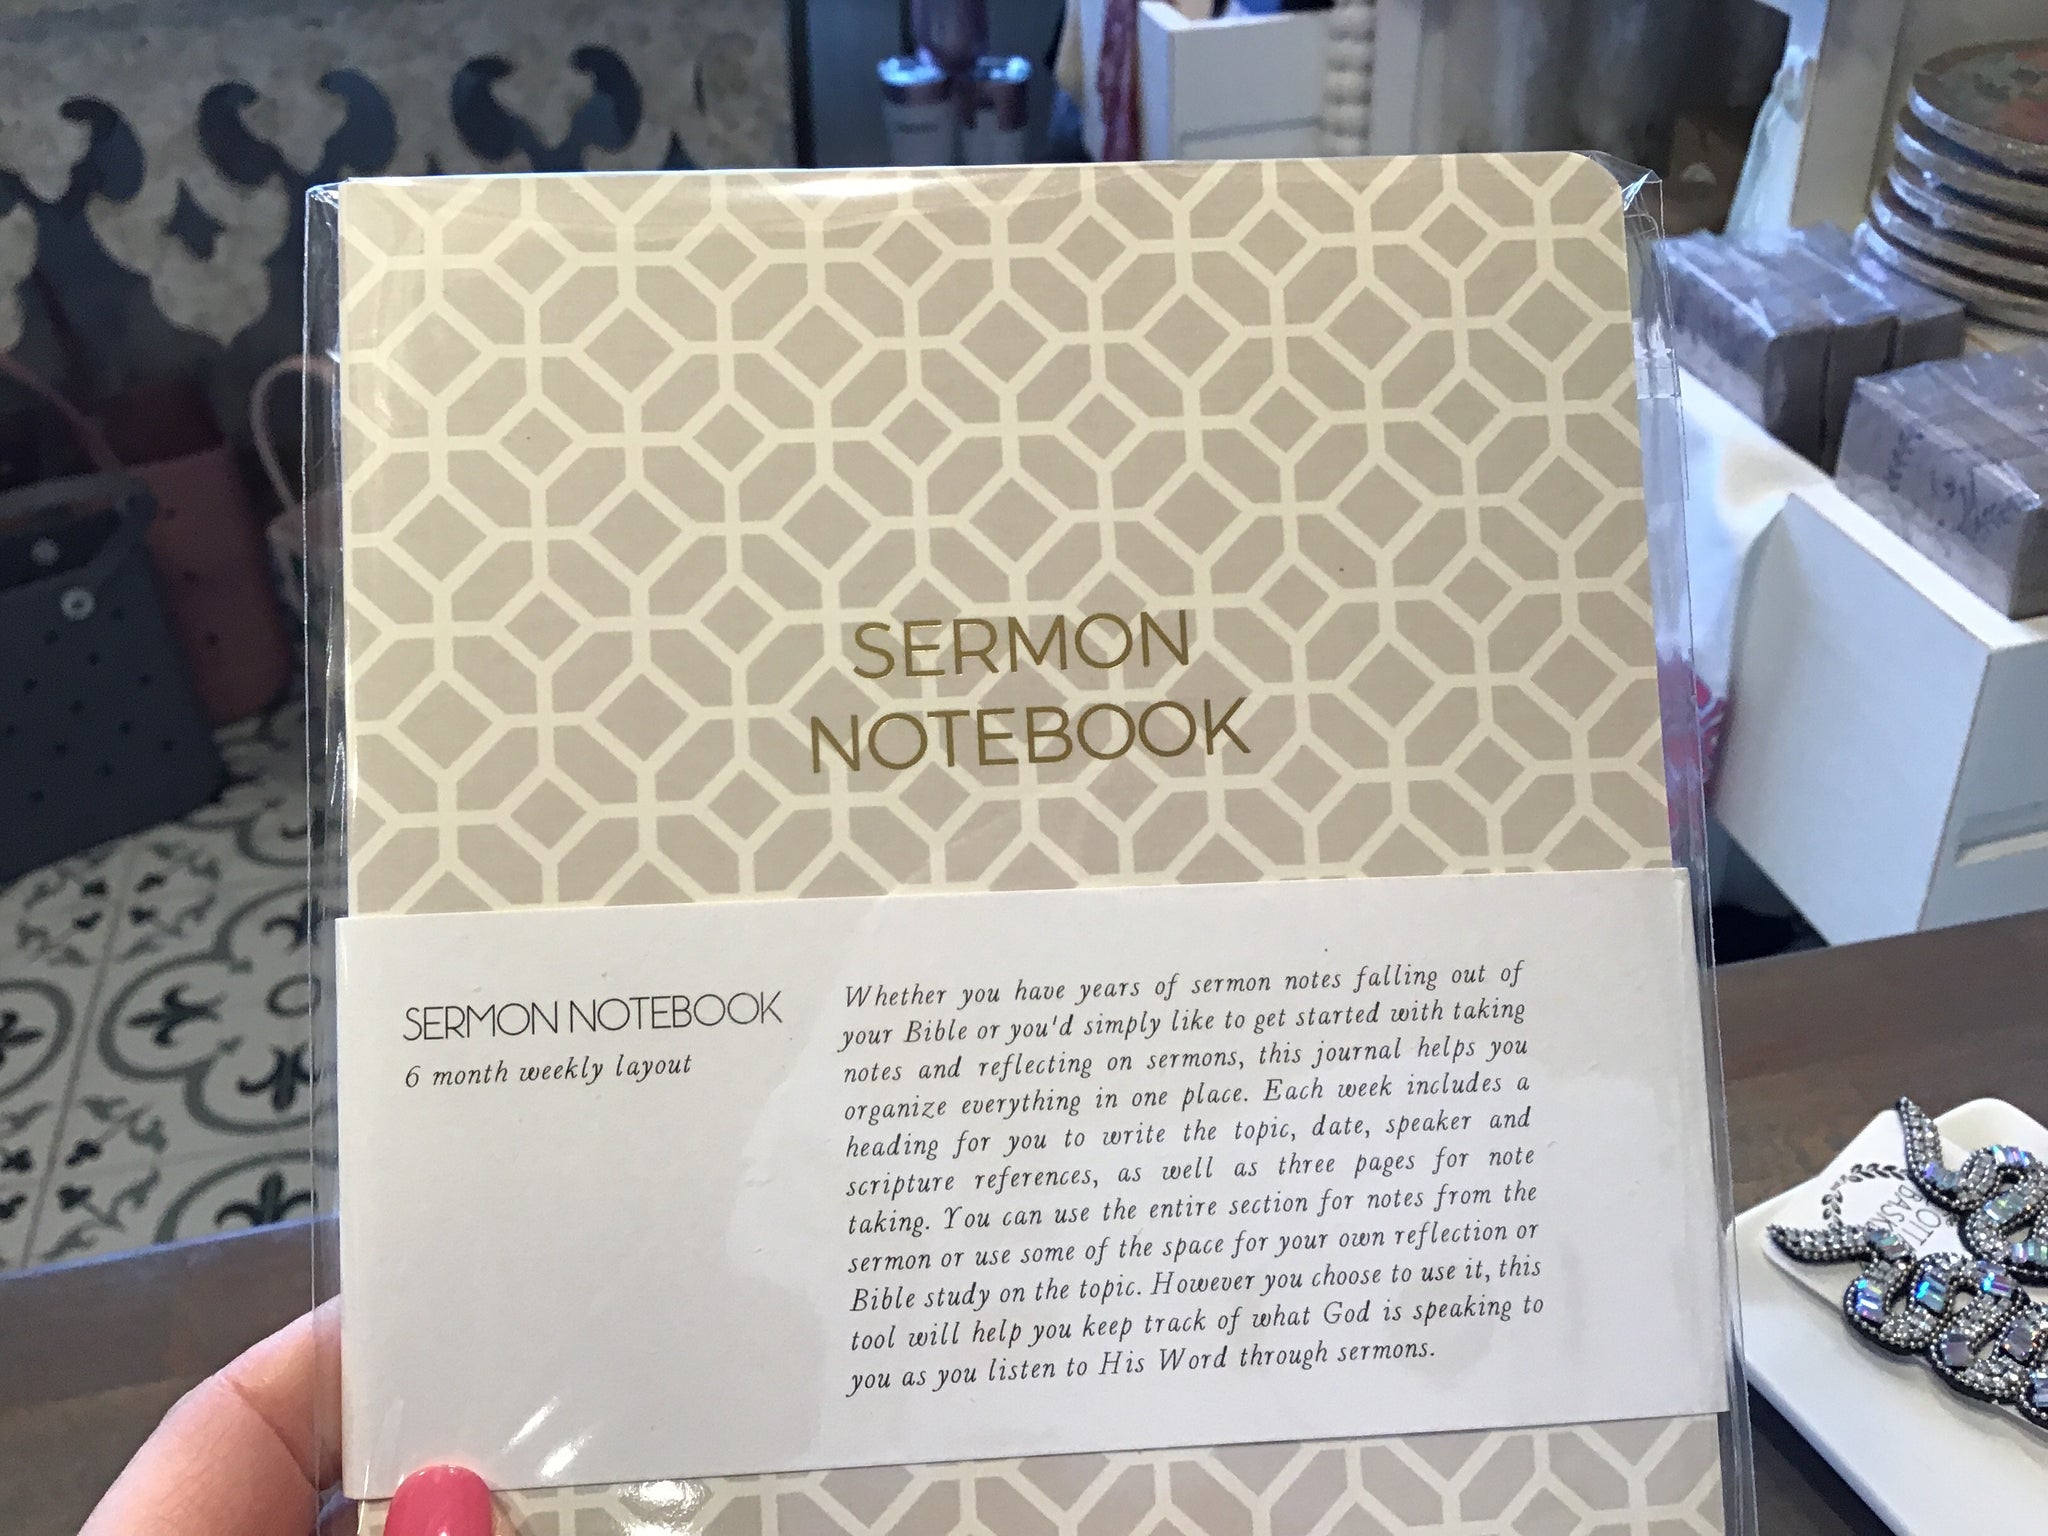 Sermon notebook